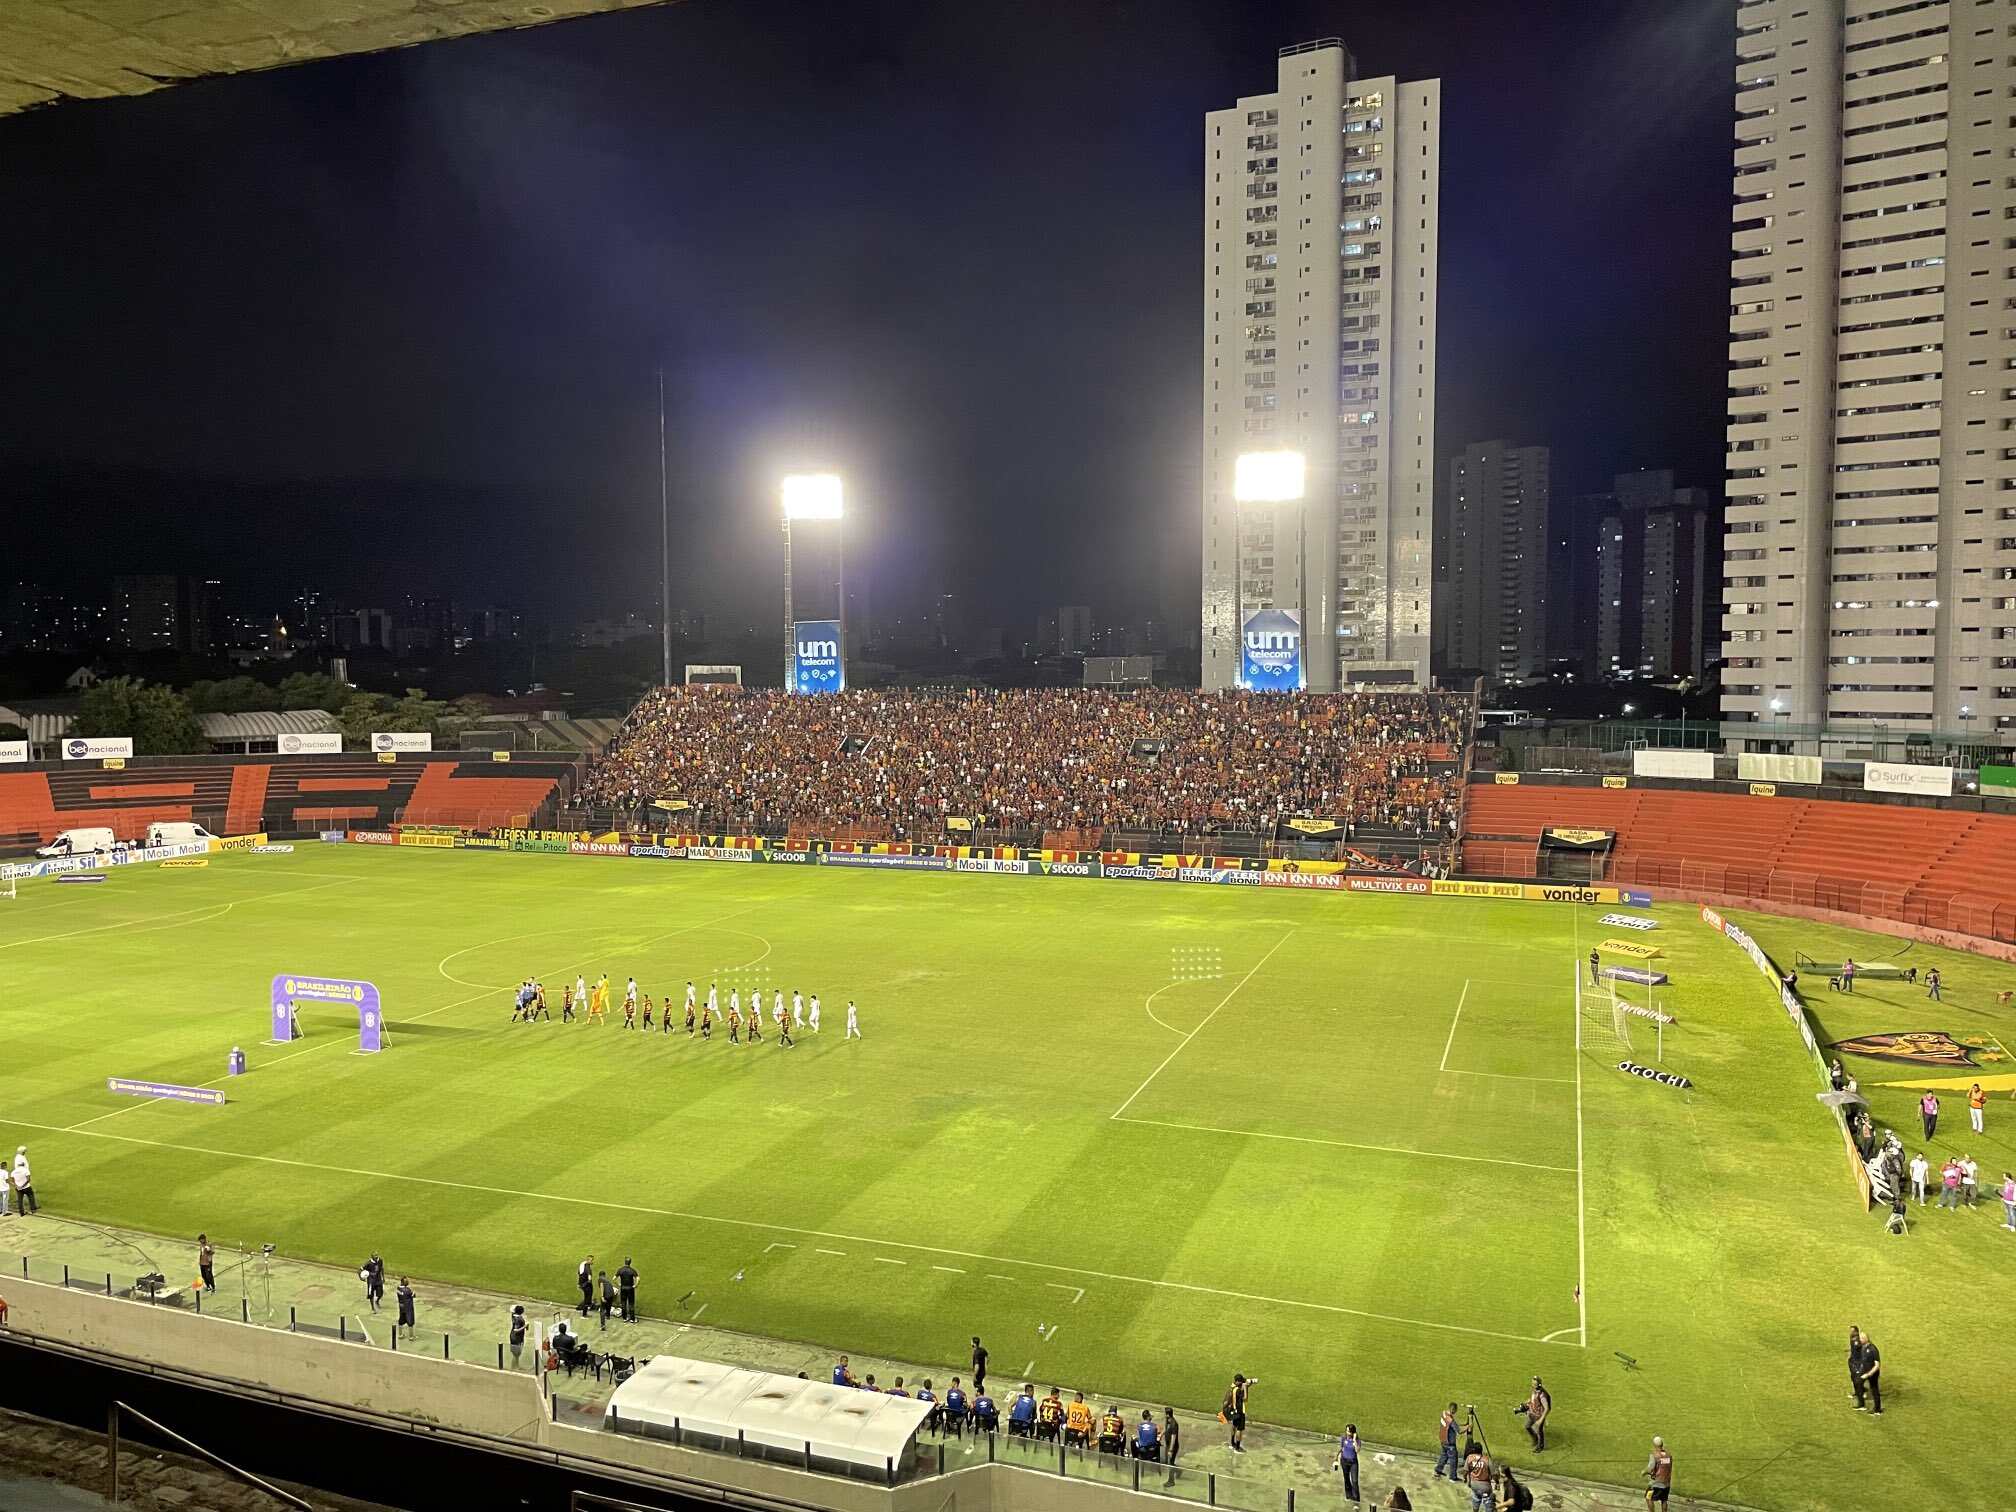 FC Sport Recife 